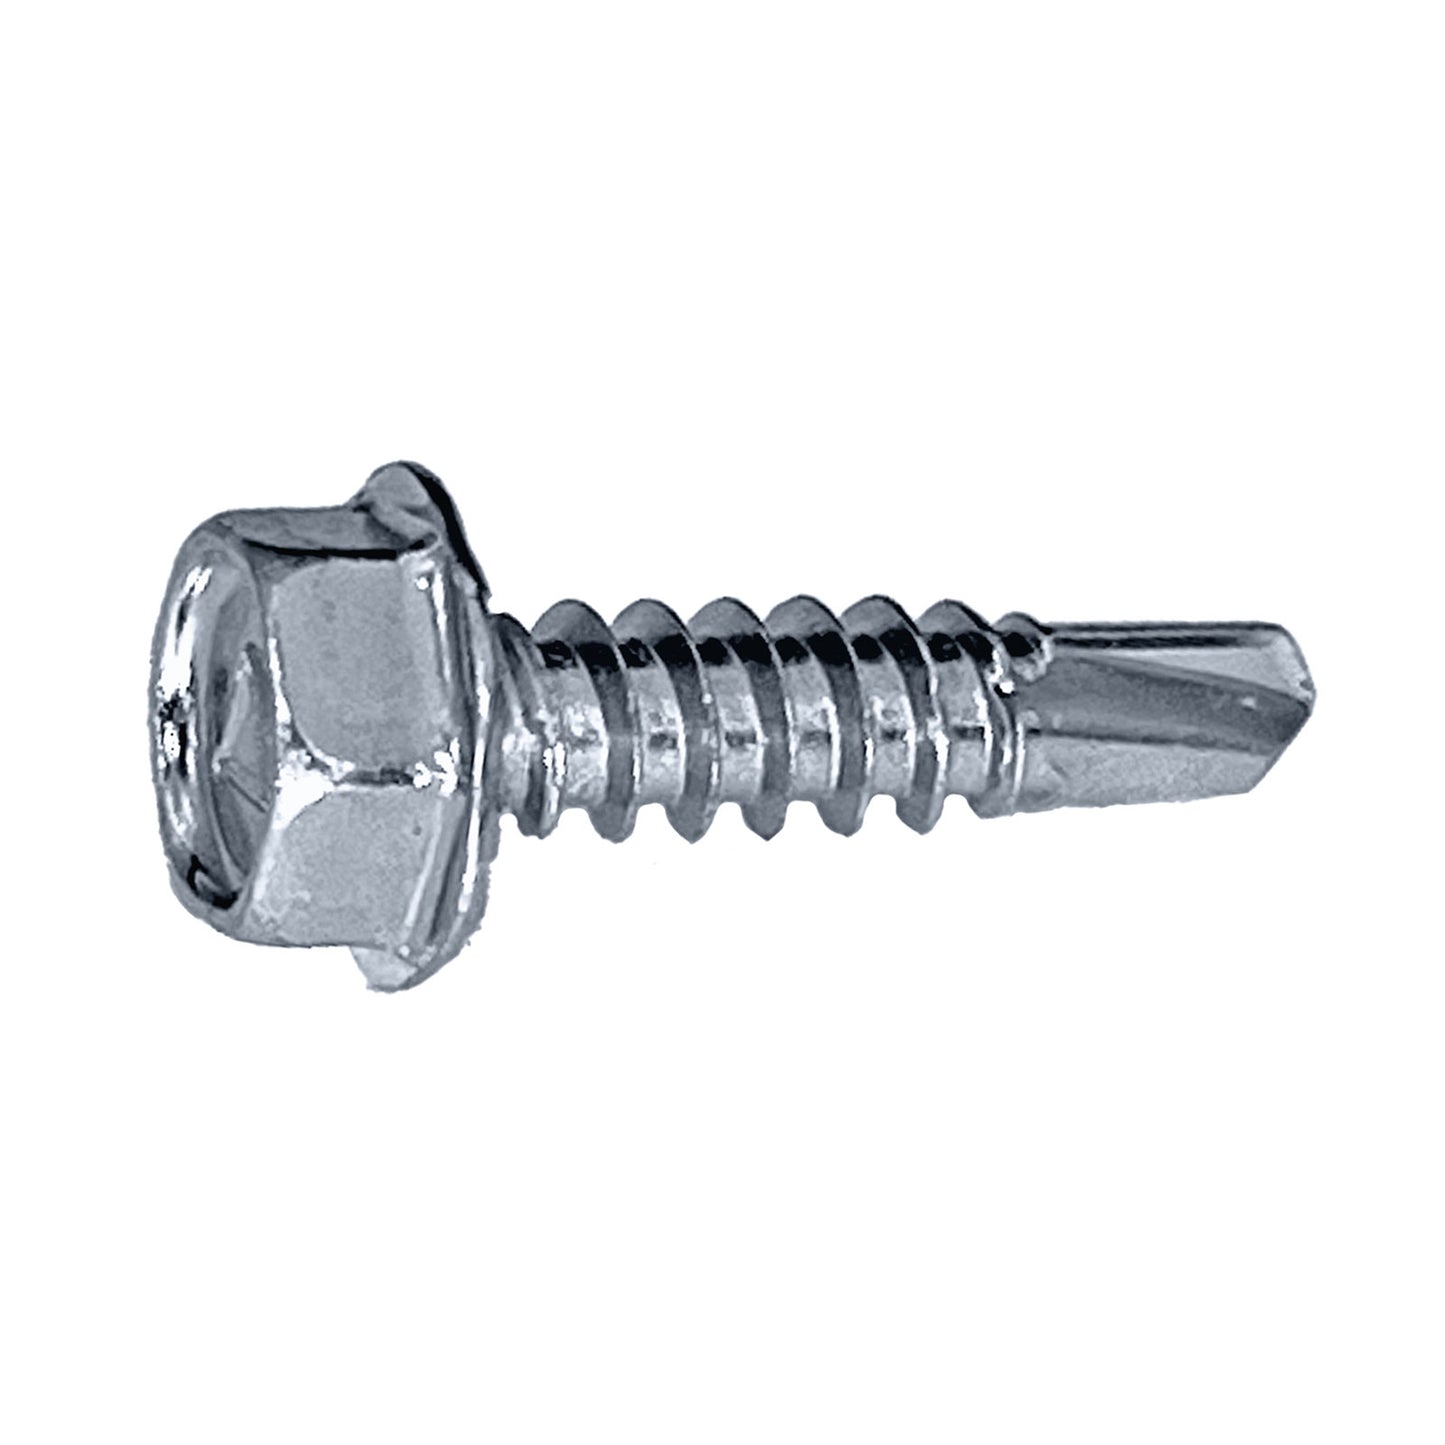 #10 x 1-1/2" Self-Drilling Metal Screw, High Hex Head - Zinc, Pkg 2500